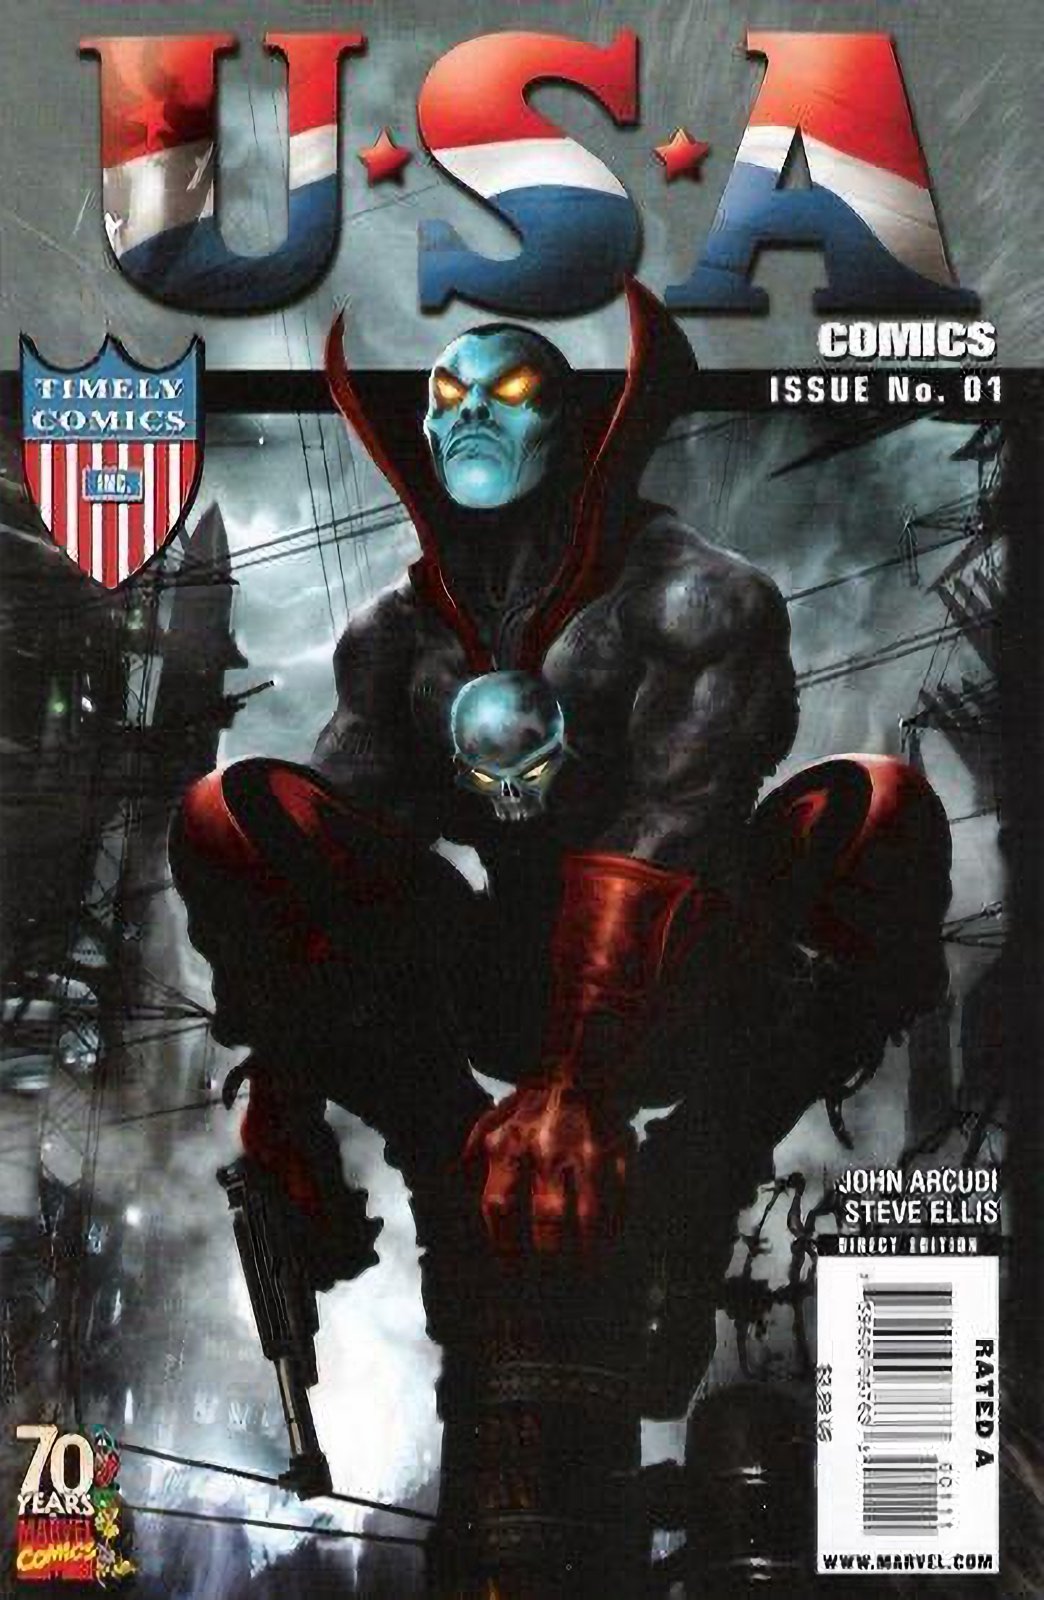 USA Comics 70th Anniversary Special #1 (2009) Marvel Comics